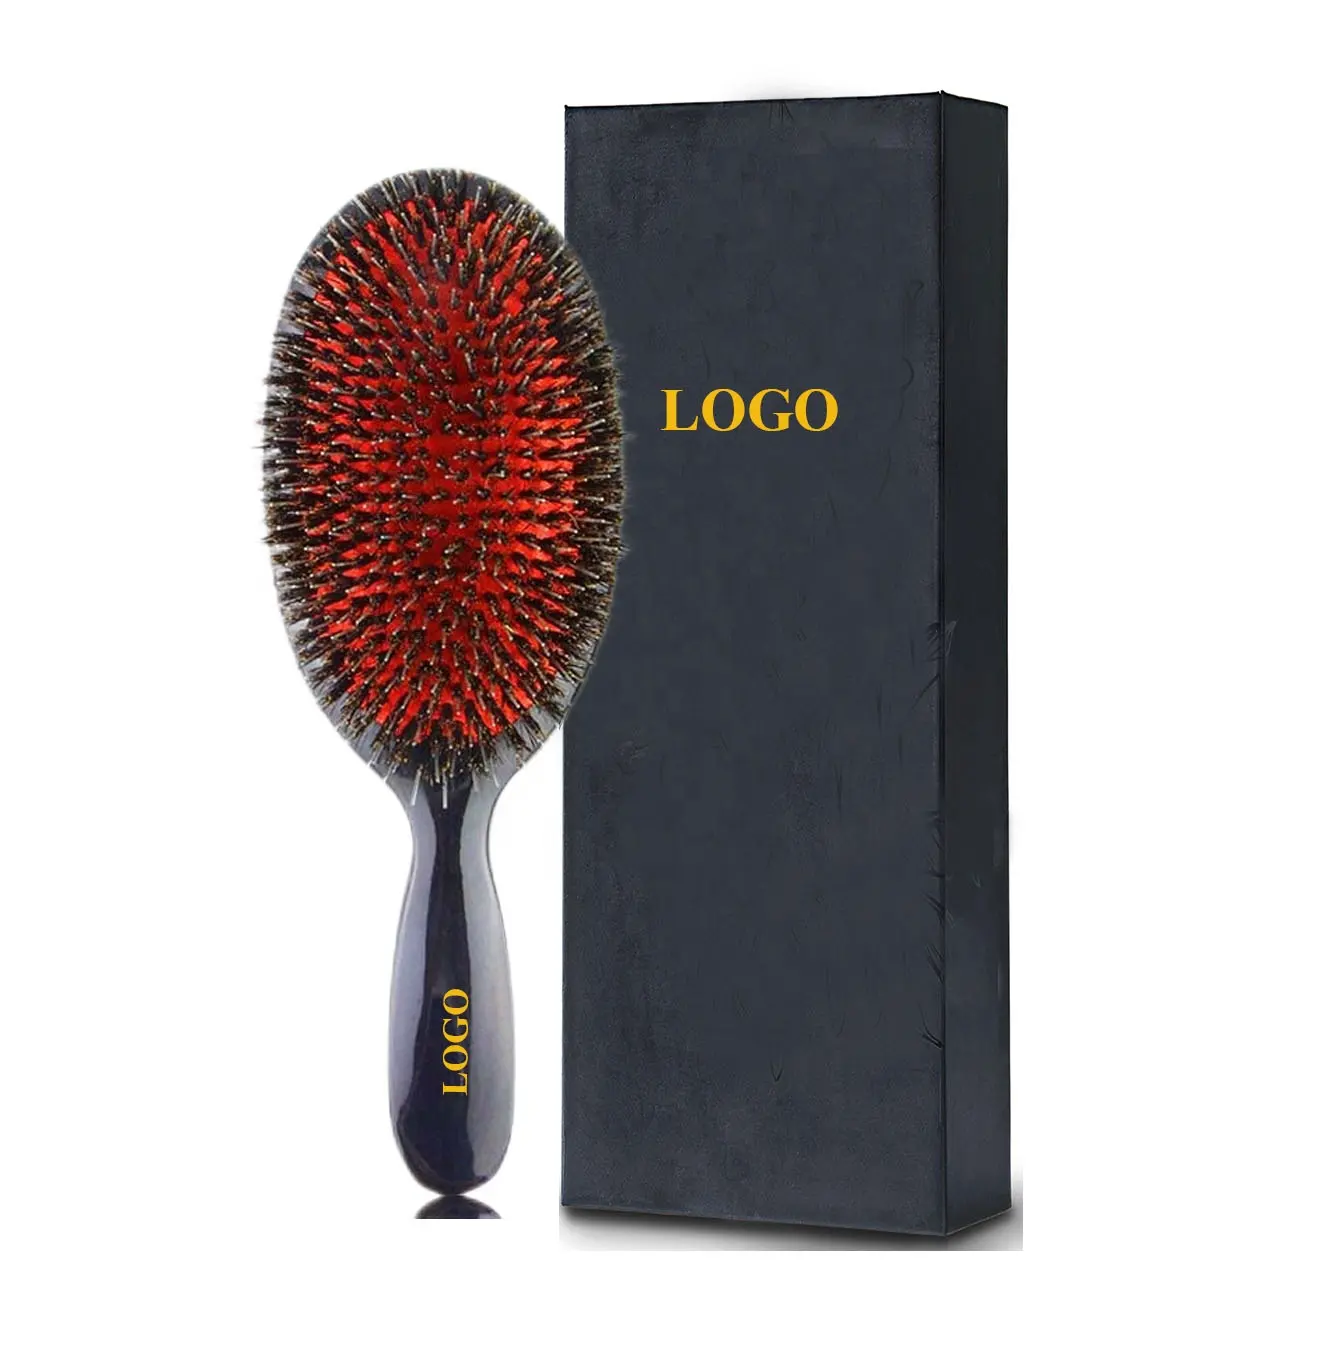 HEYAMO marque privée dur moyen brosse à cheveux cochon sanglier brosse à cheveux démêlant perruque Extensions de cheveux coussin pagaie brosse